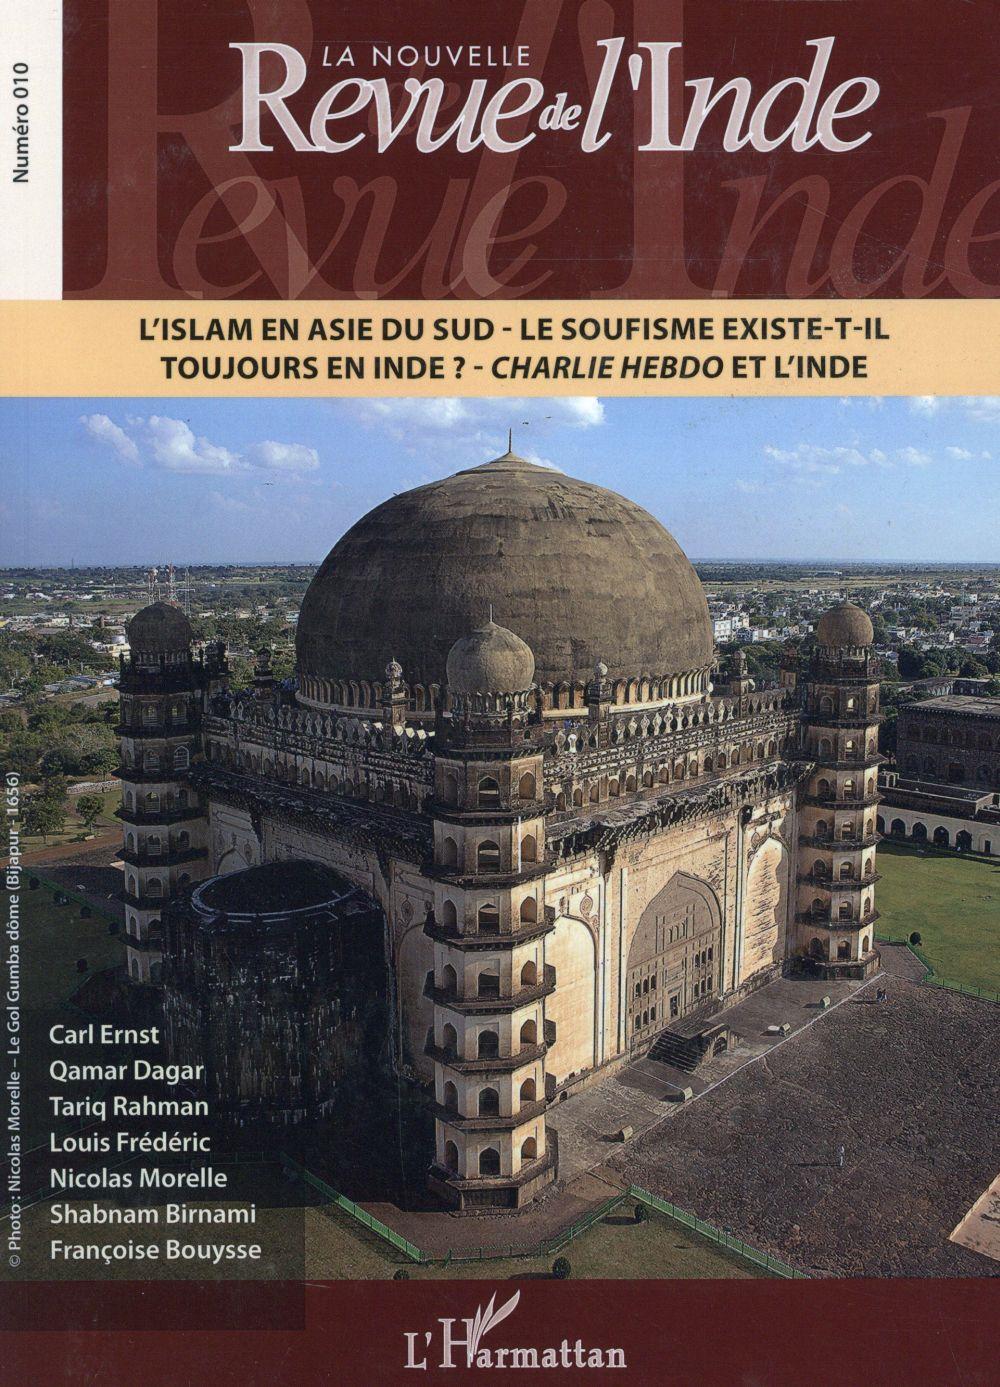 Vente Livre :                                    LA NOUVELLE REVUE DE L'INDE ; l'islam en Asie du Sud ; le soufisme existe-t-il toujours en Inde ? Charlie Hebdo et l'Inde
- La Nouvelle Revue De L'Inde                                     